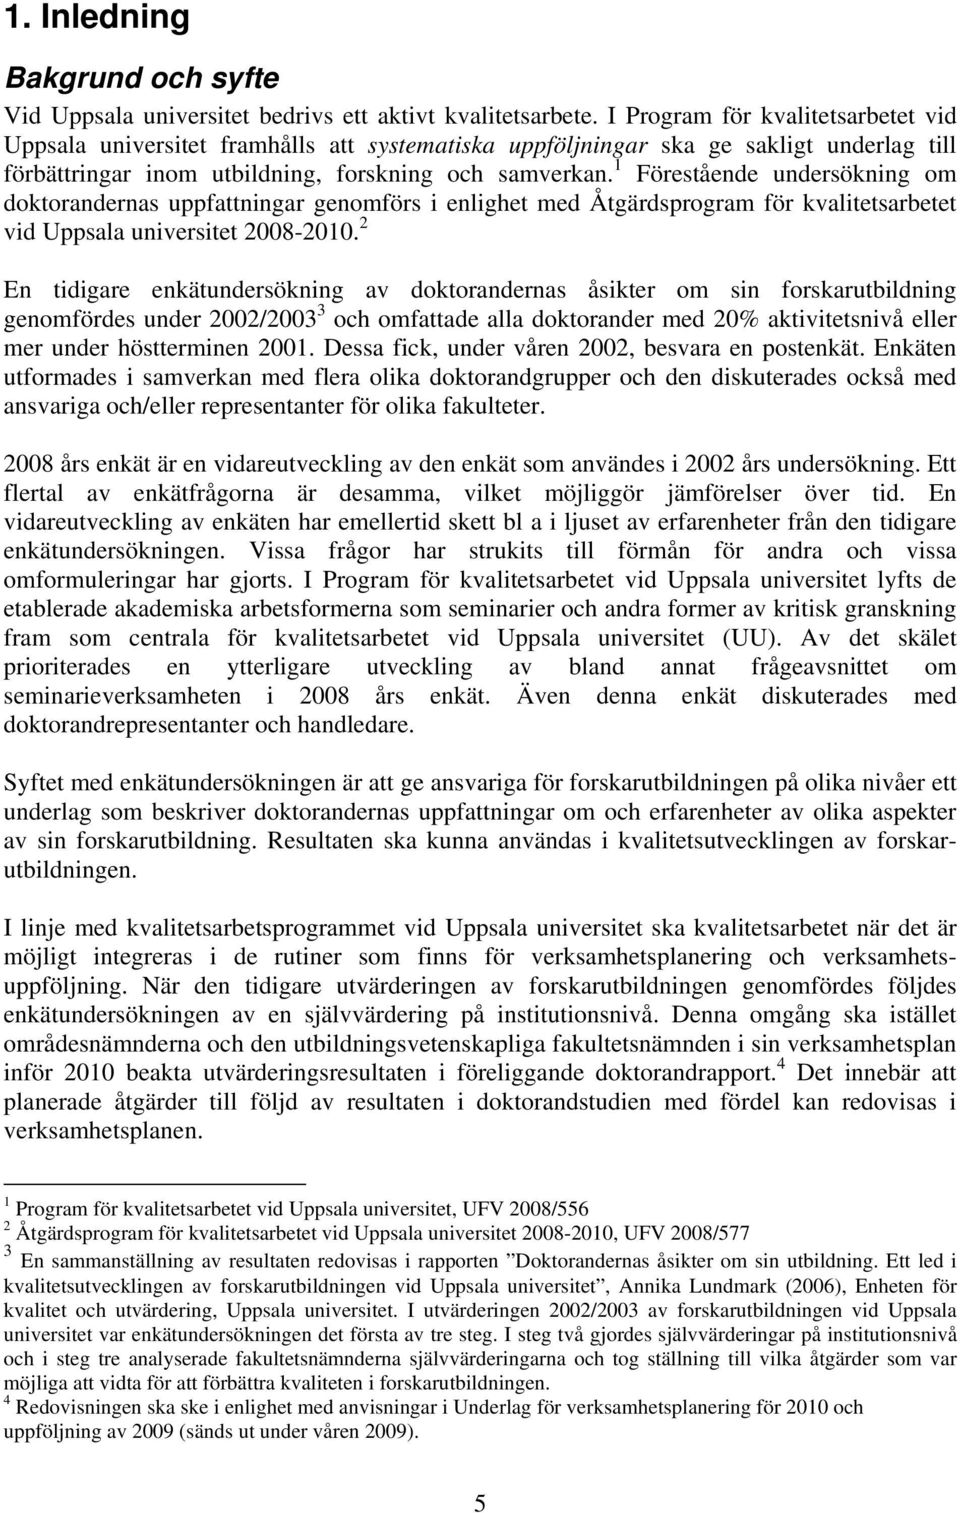 1 Föreståede udersökig om doktoraderas uppfattigar geomförs i elighet med Åtgärdsprogram för kvalitetsarbetet vid Uppsala uiversitet -2010.